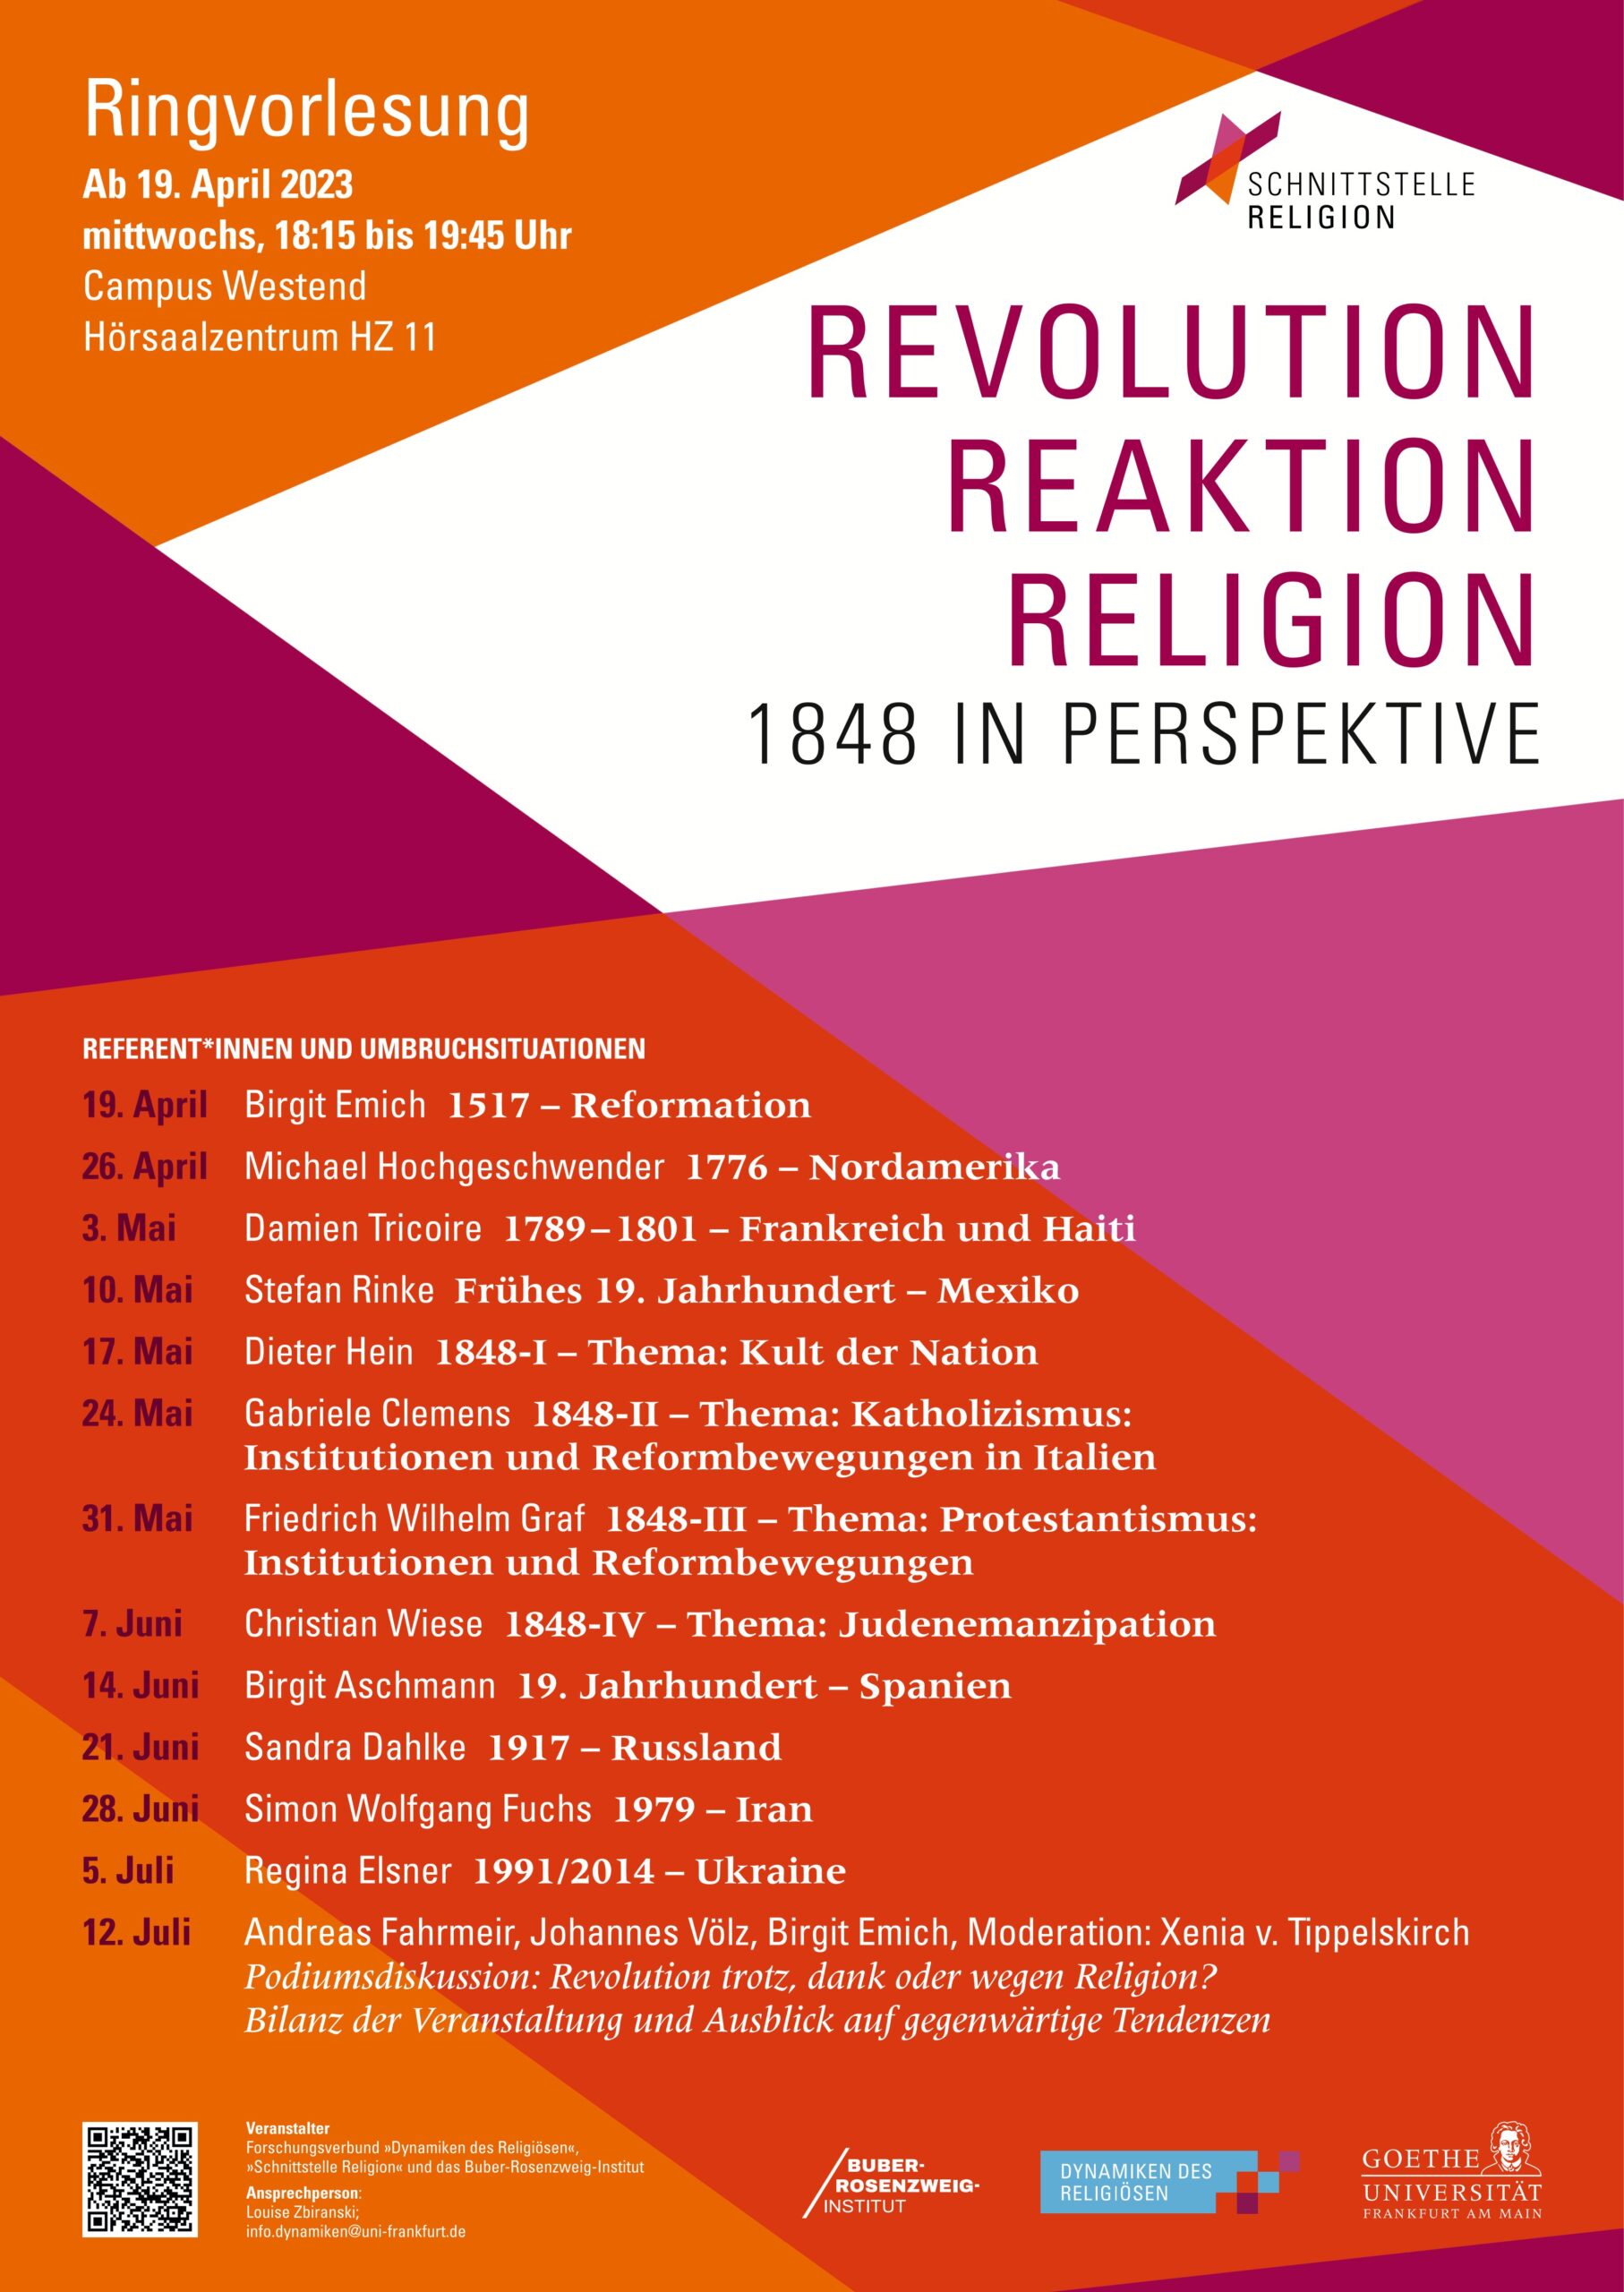 Religion, Antireligiosität und Performanz in der Oktoberrevolution. Vortrag von Dr. Sandra Dahlke (Ringvorlesung 1848)